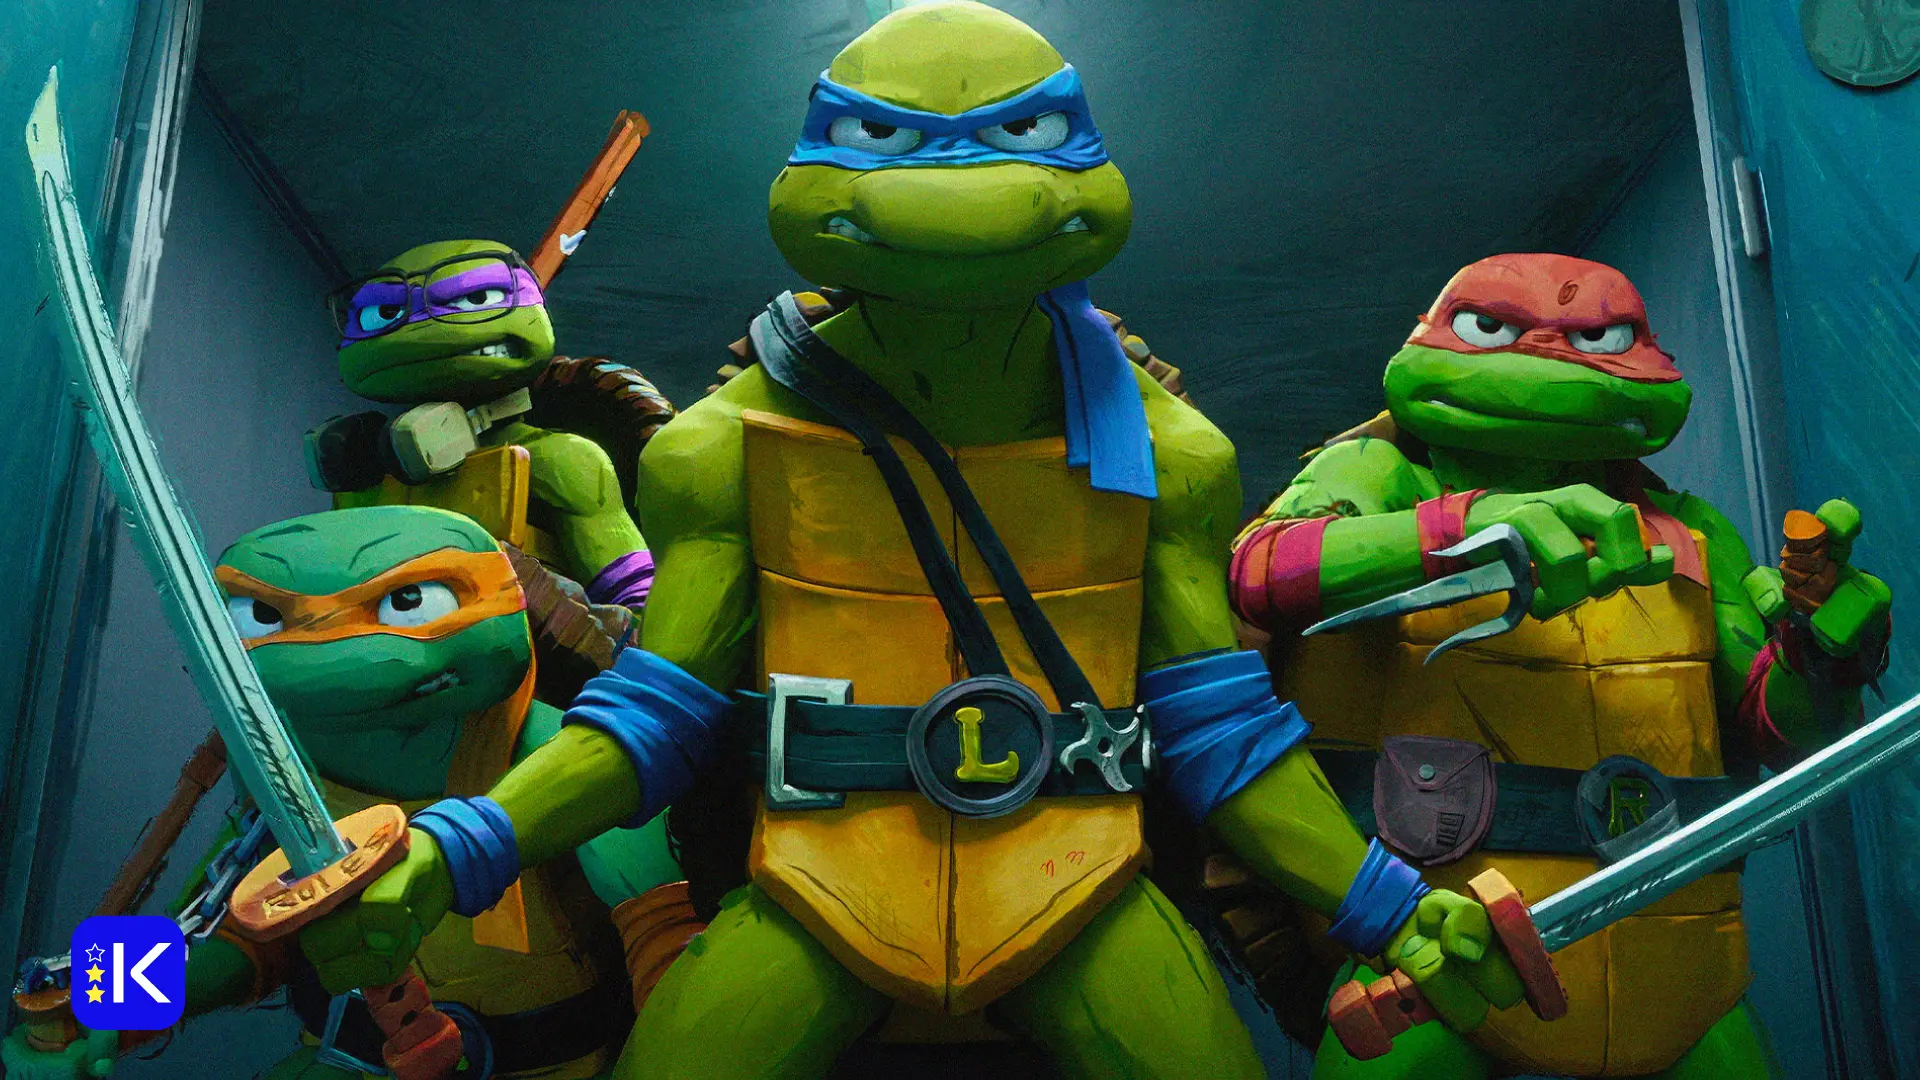 Videorecenze: Želvy Ninja jsou konečně praví puberťáci. Animák s nimi skvěle baví